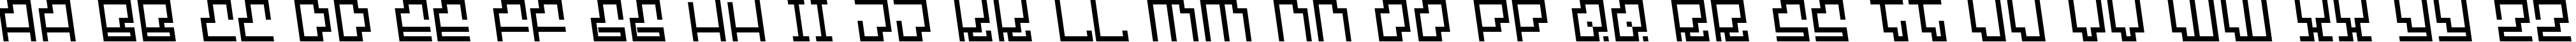 Пример написания английского алфавита шрифтом Hypersonic